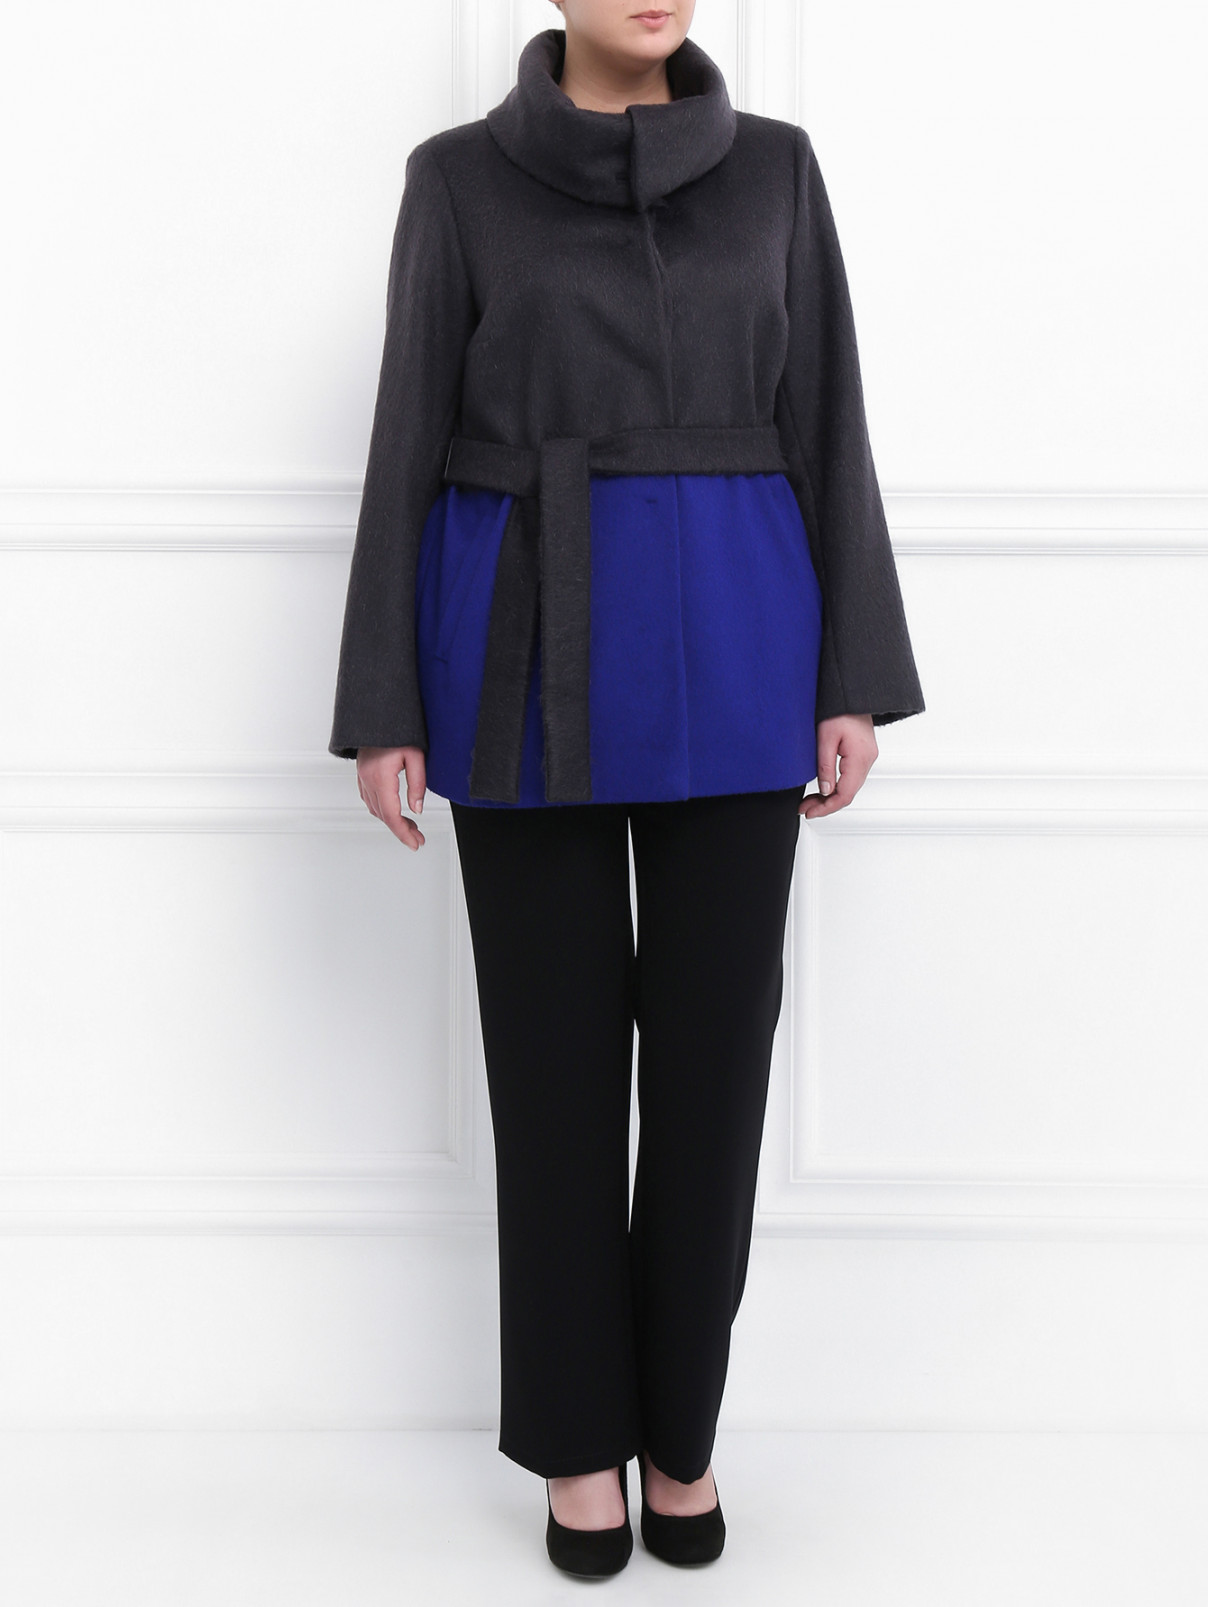 Пальто из шерсти и мохера Marina Rinaldi  –  Модель Общий вид  – Цвет:  Серый